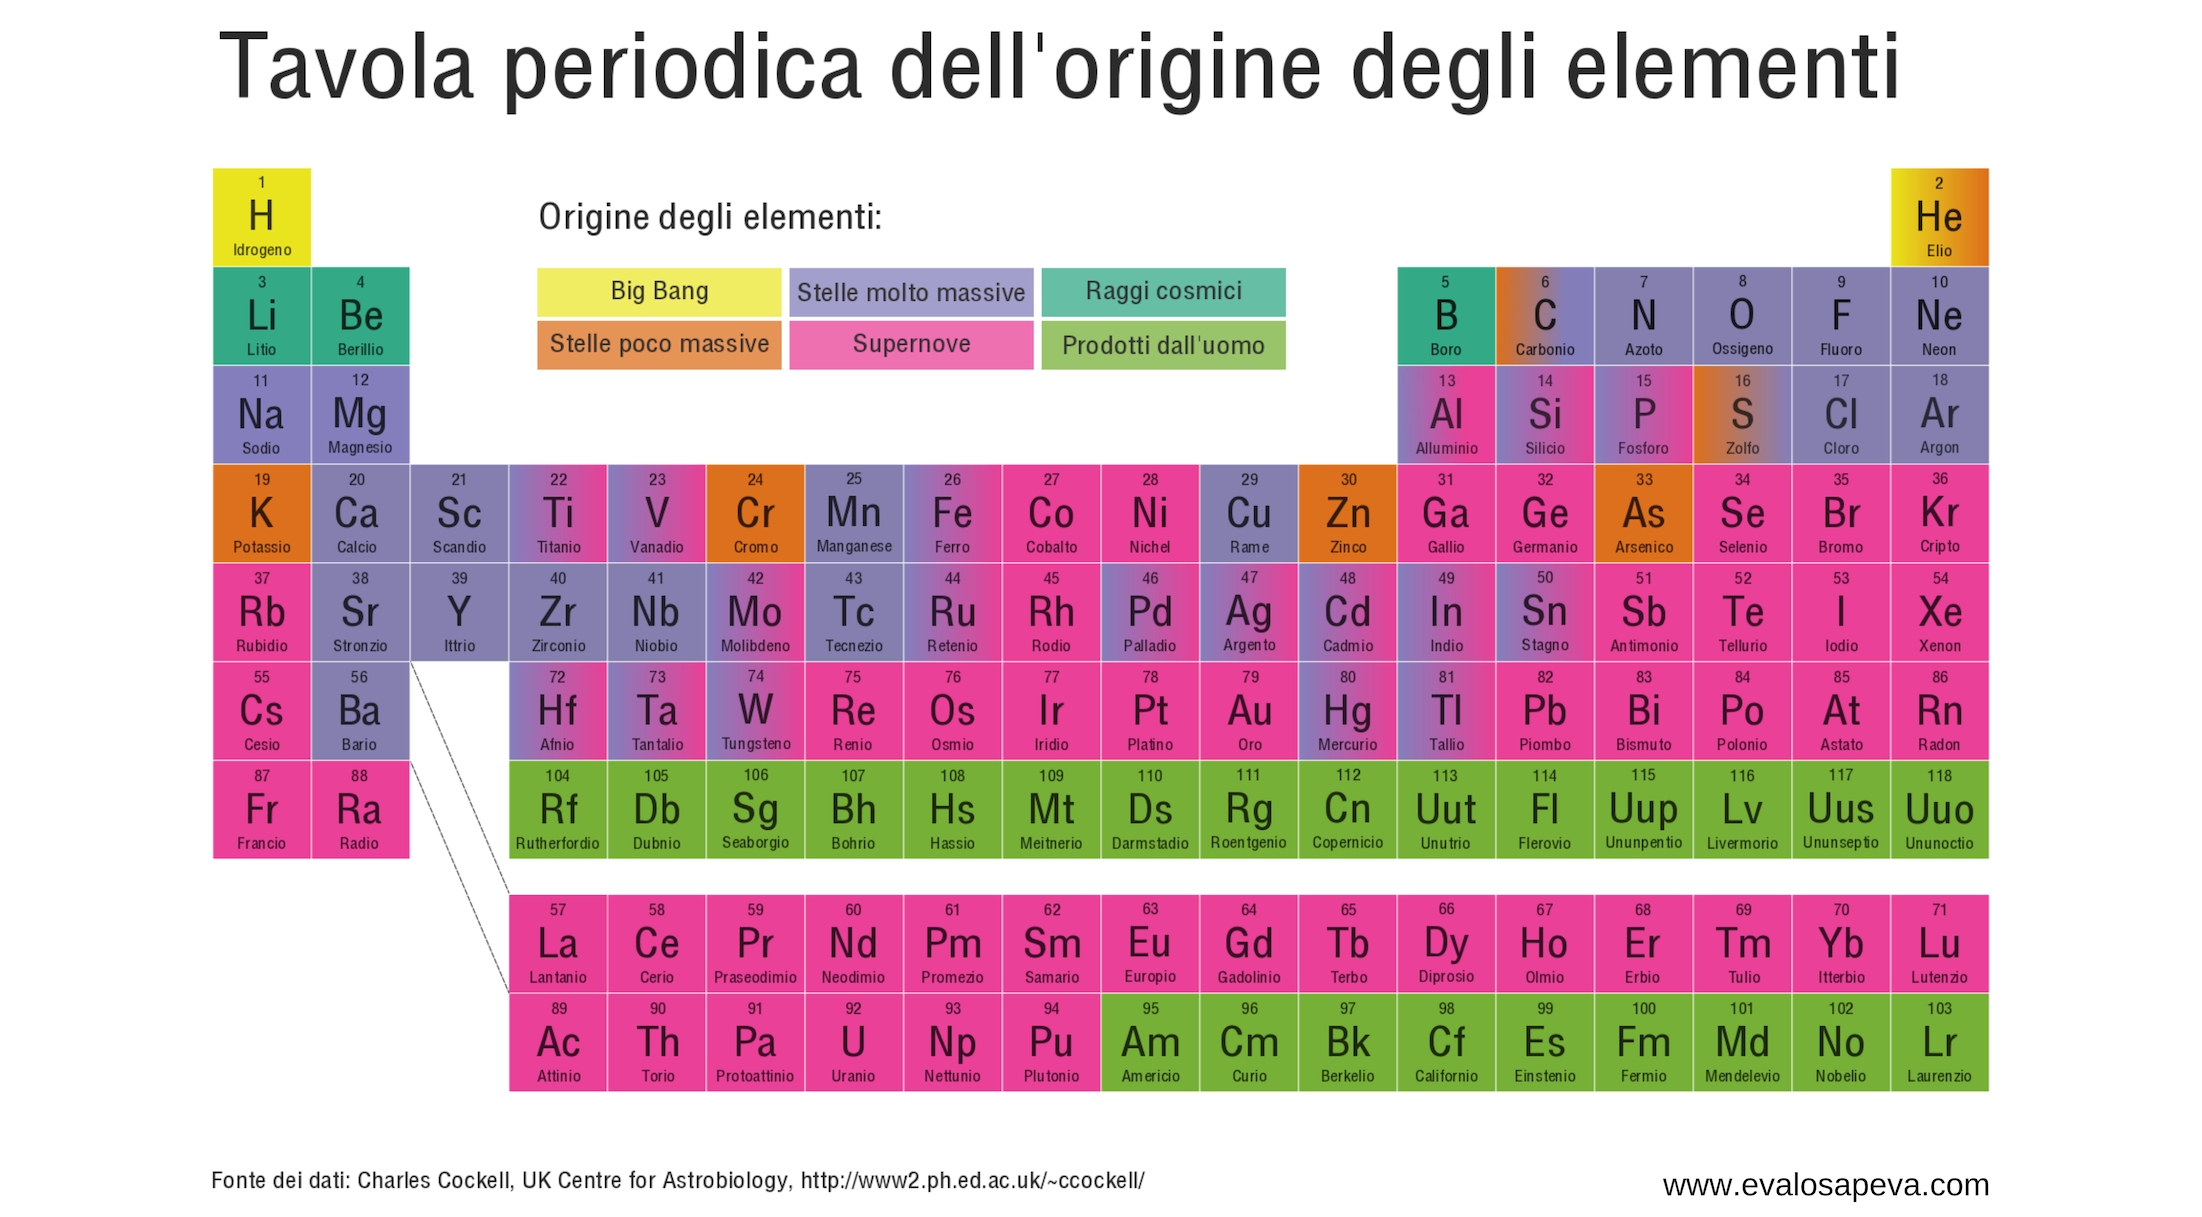 Origine degli elementi tavola periodica